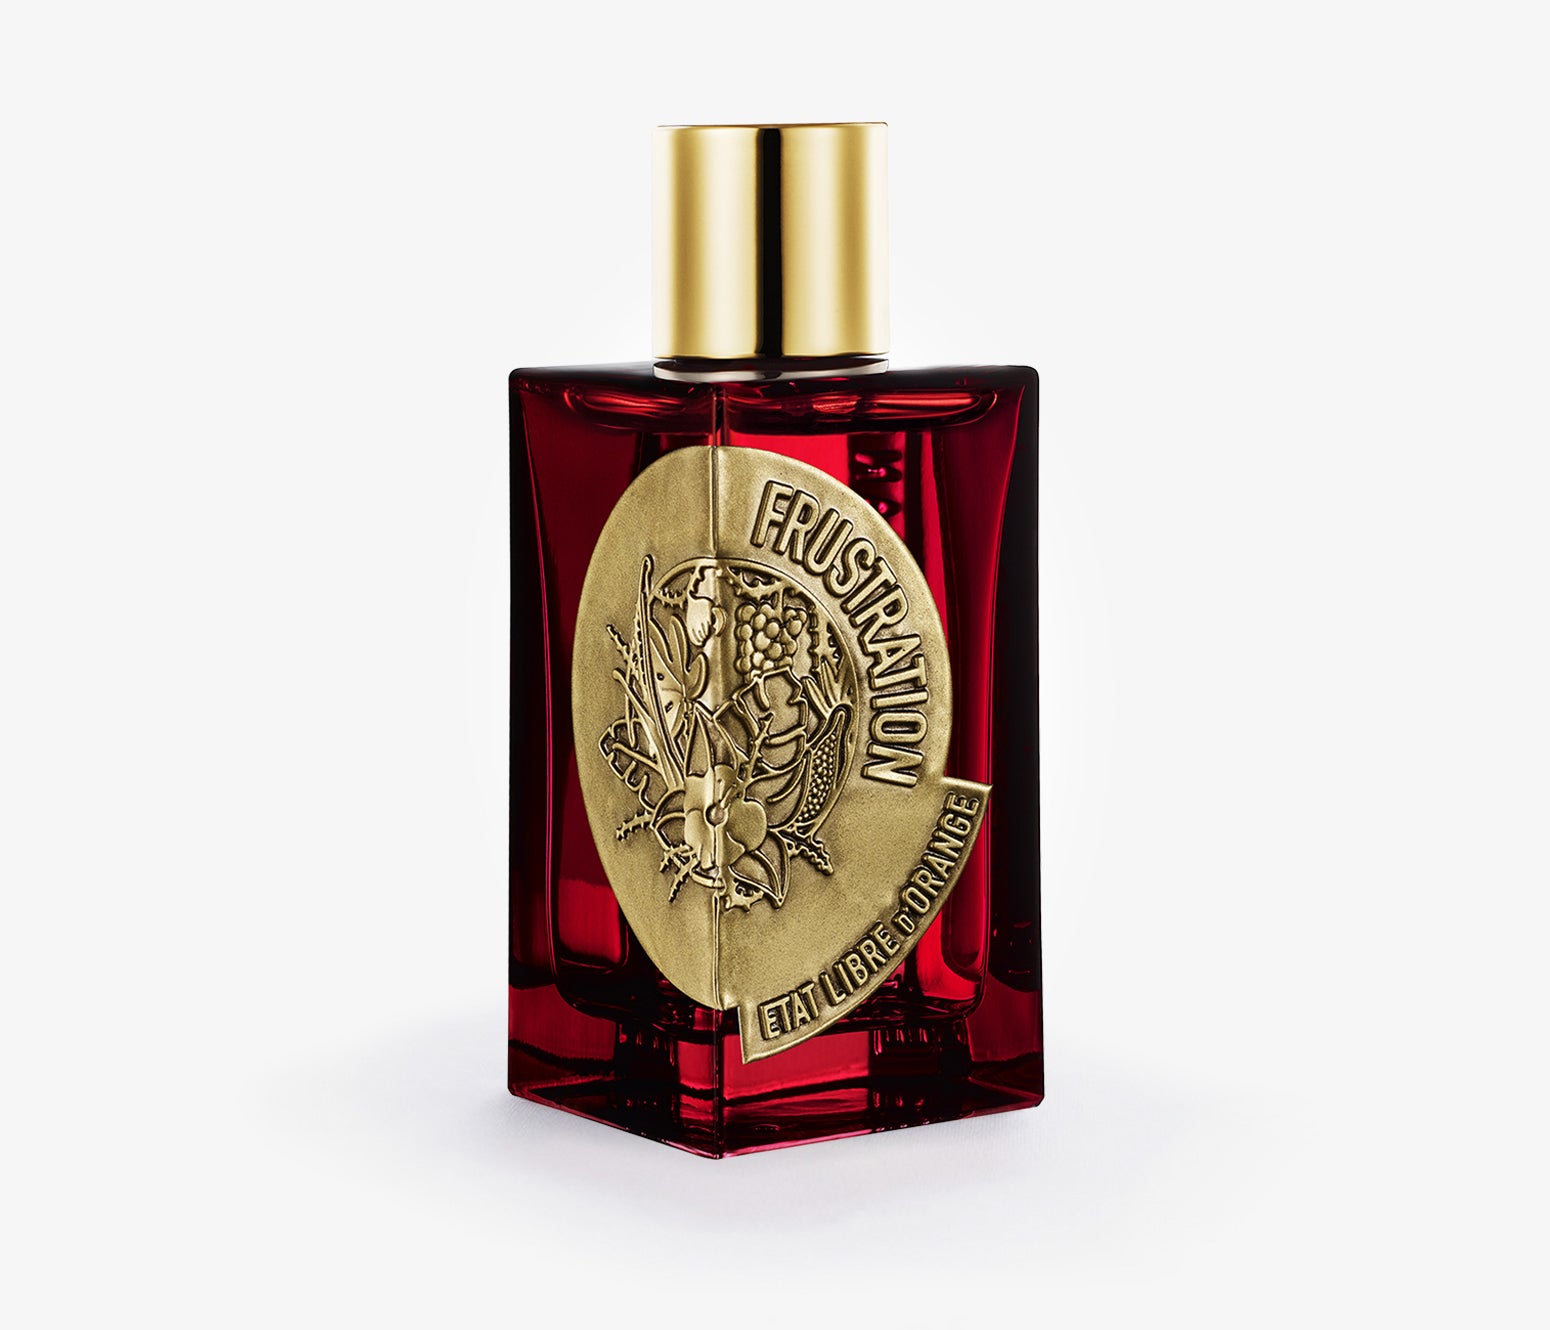 TABAC ROSE Eau De Parfum – So Avant Garde